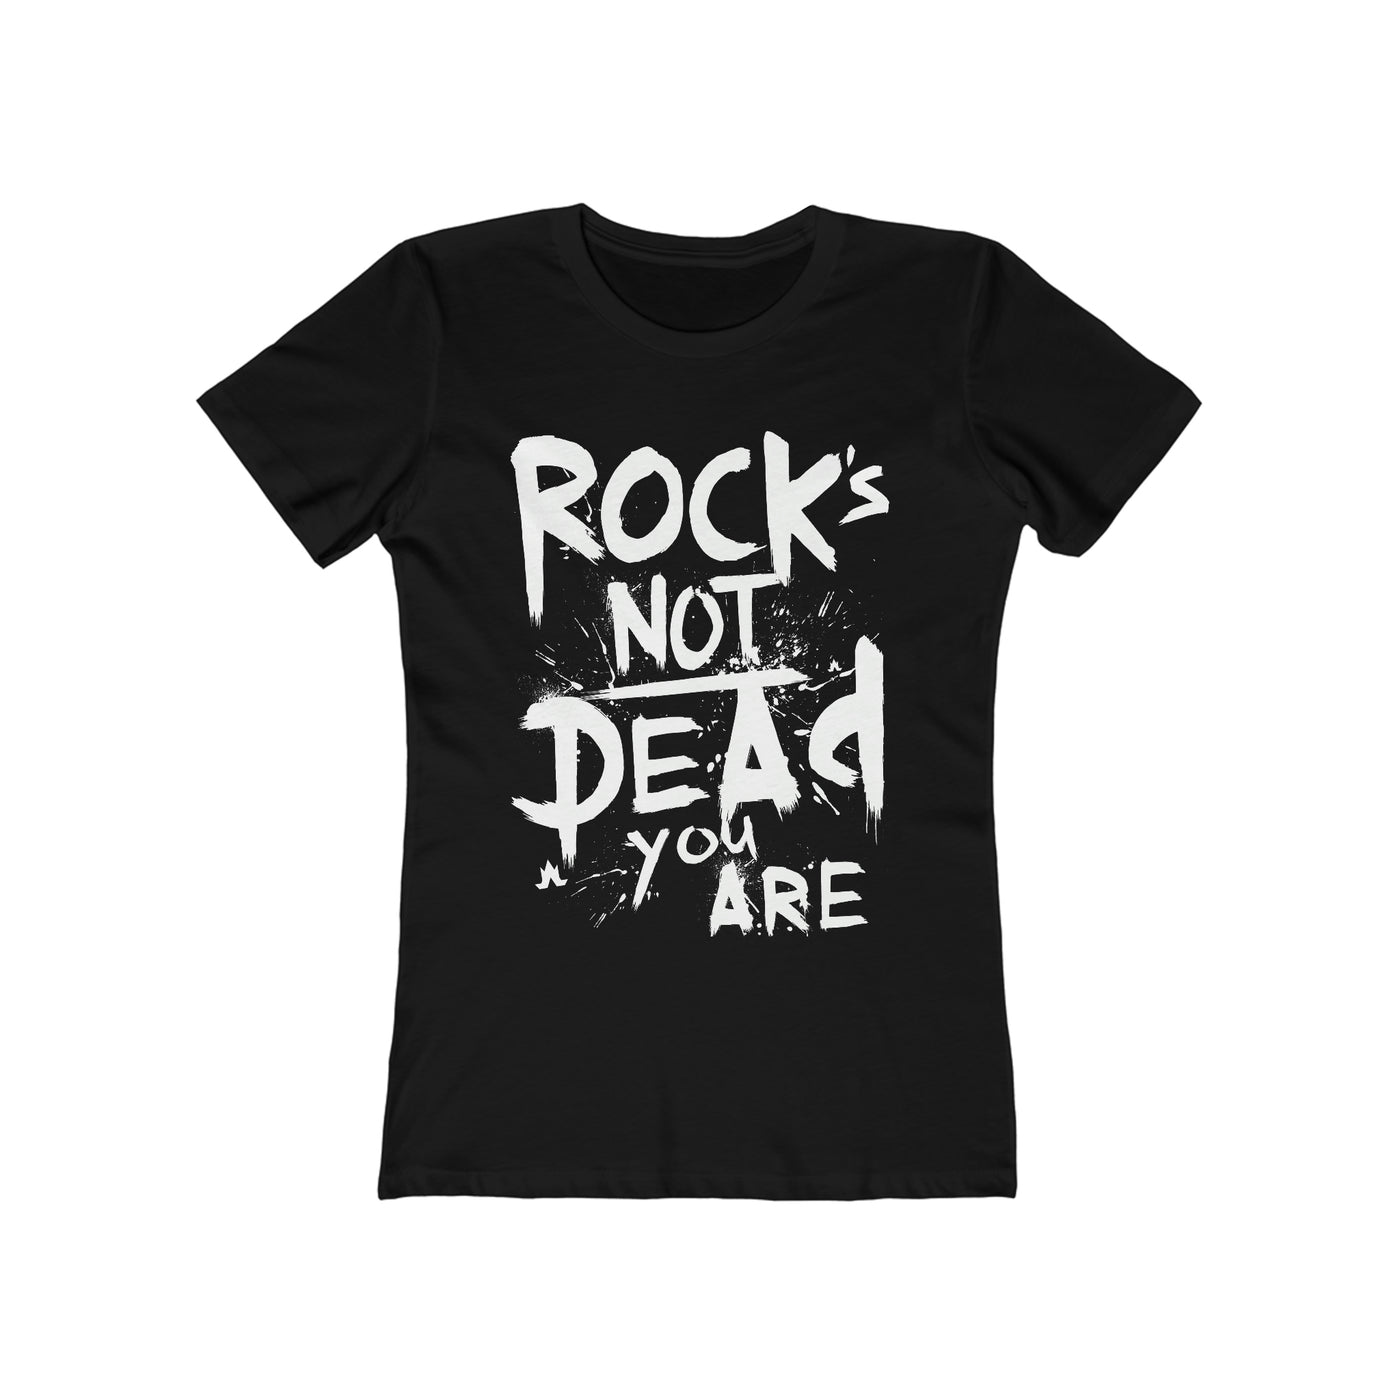 Rock's Not Dead Tee (White Print) - Women's